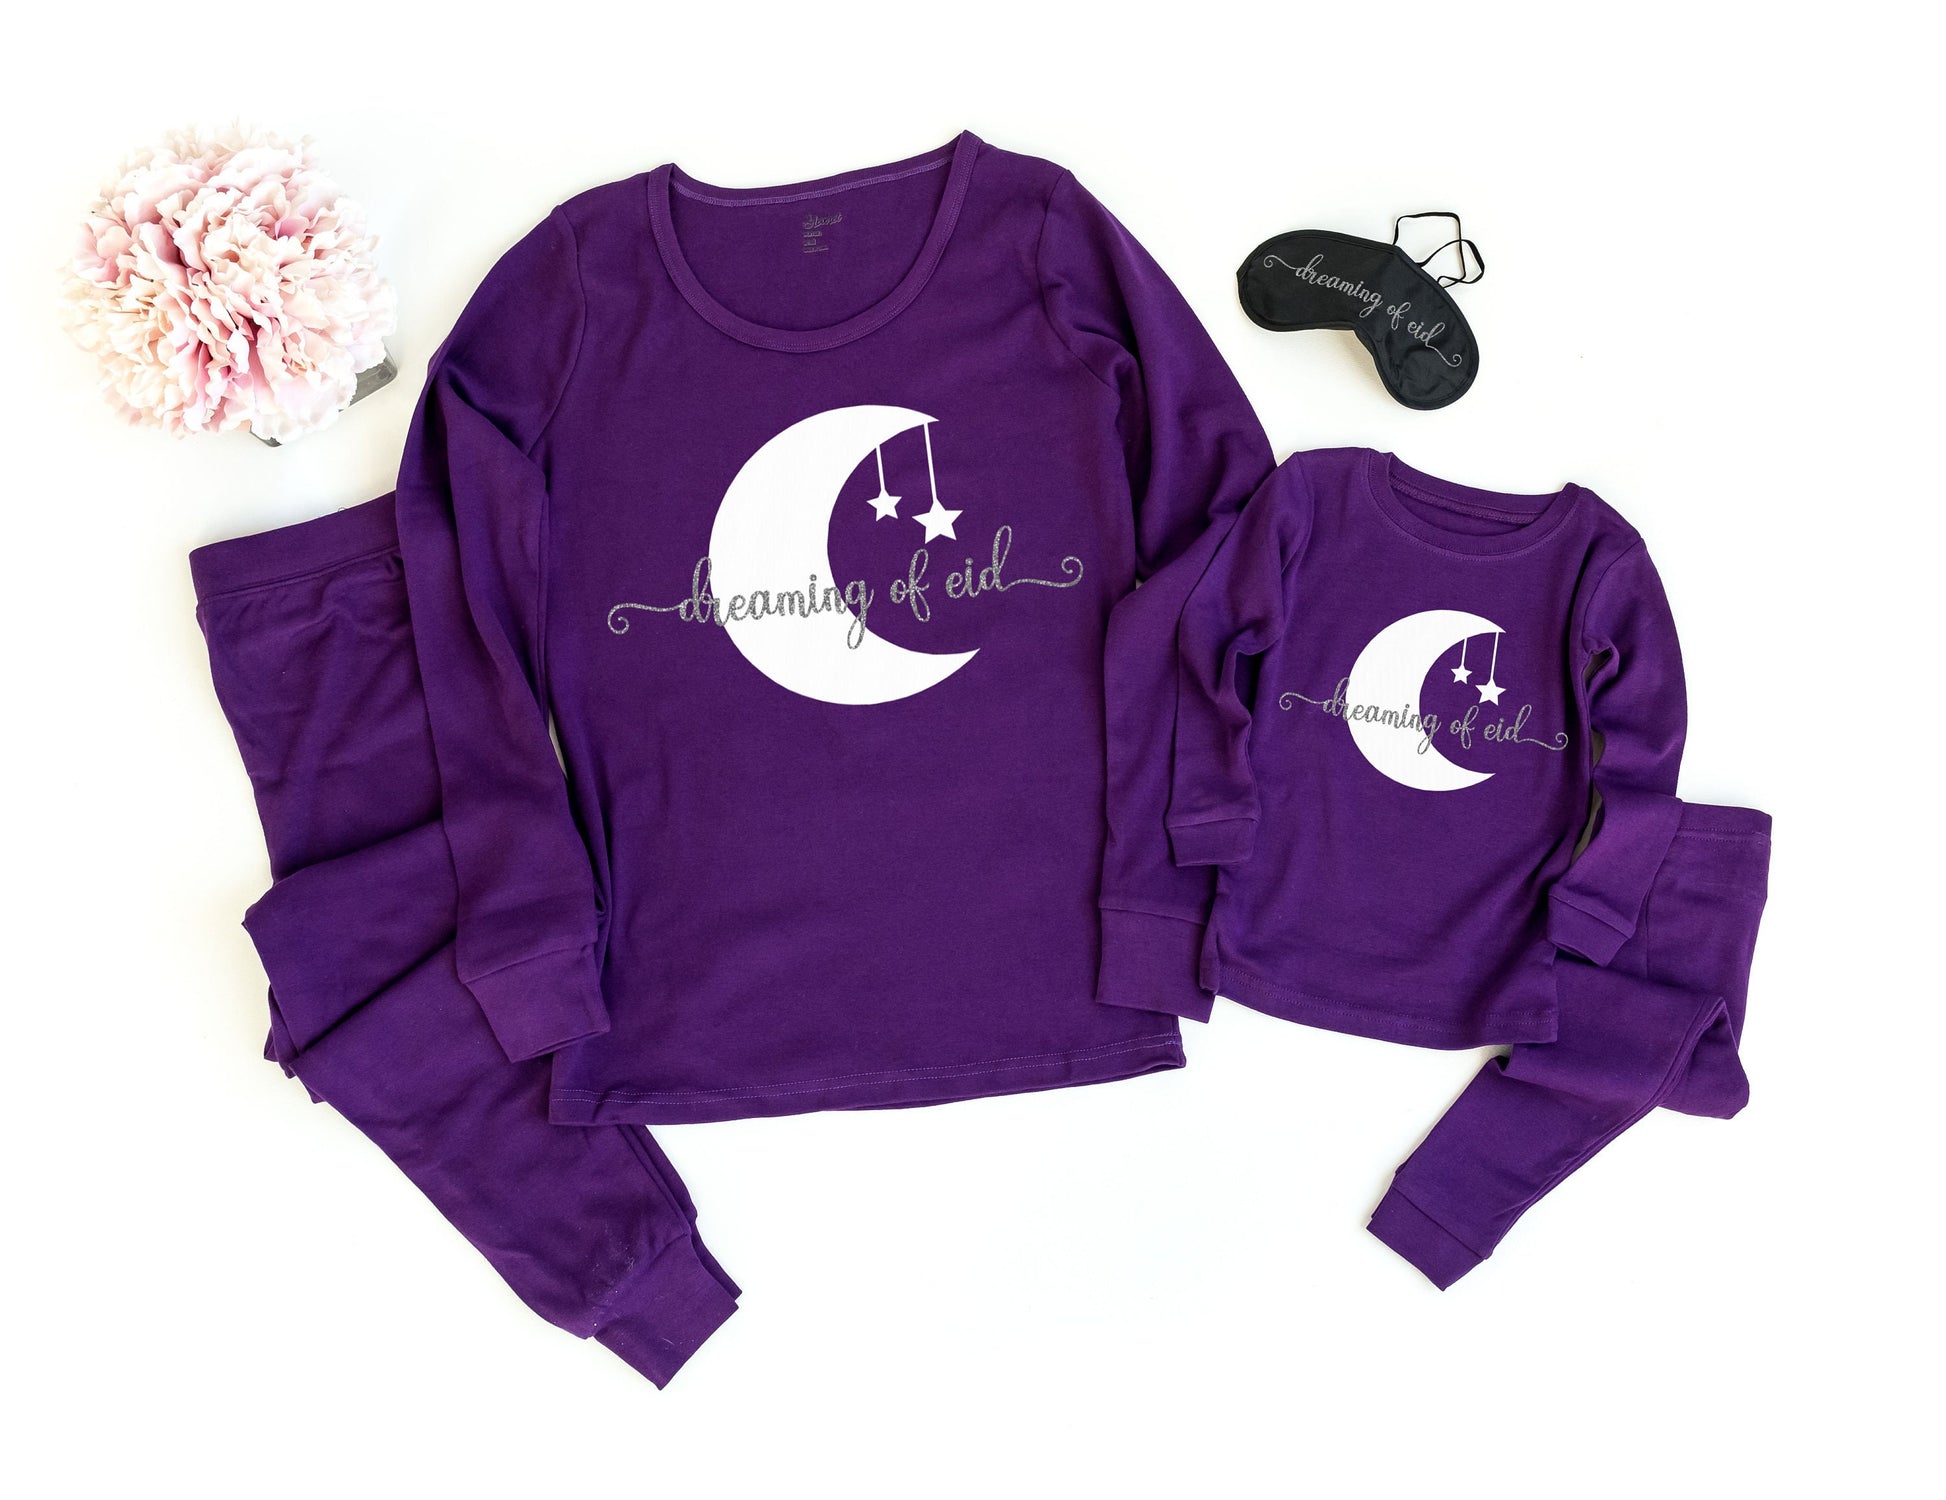 Dreaming of Eid Dark Purple Pajamas - Girls Eid Pajamas - Eid Mubarak - Eid Gifts - Eid Gifts for Kids - Eid Pajamas for Kids